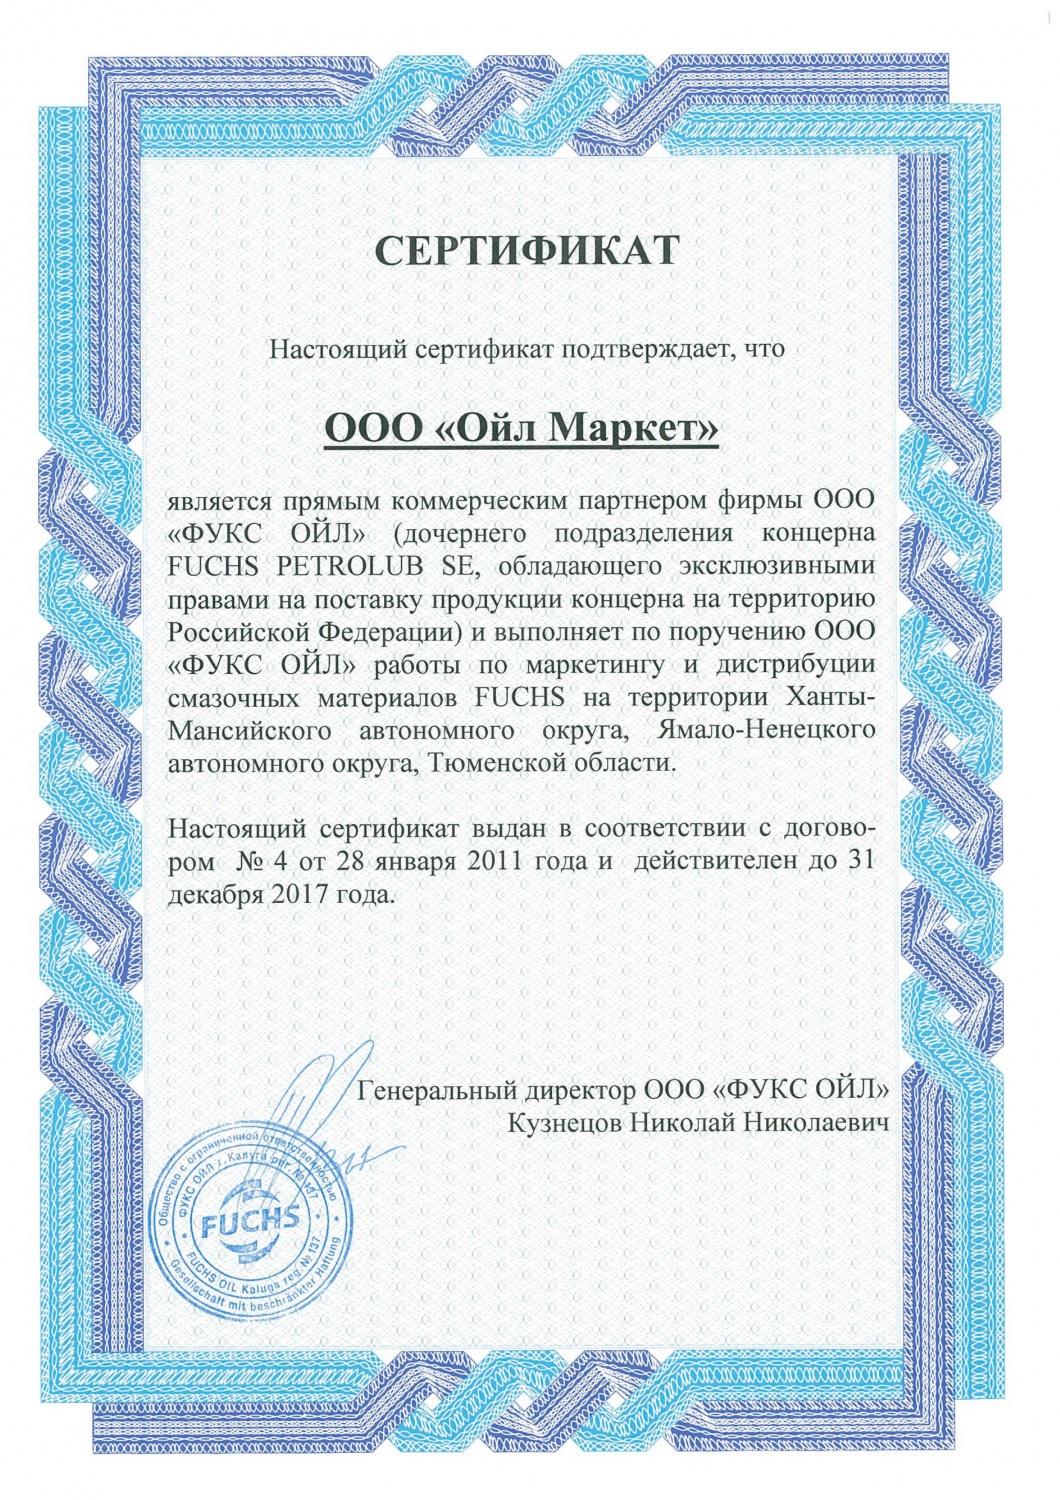 Сертификат прямого коммерческого партнера FucHs PETROLUB